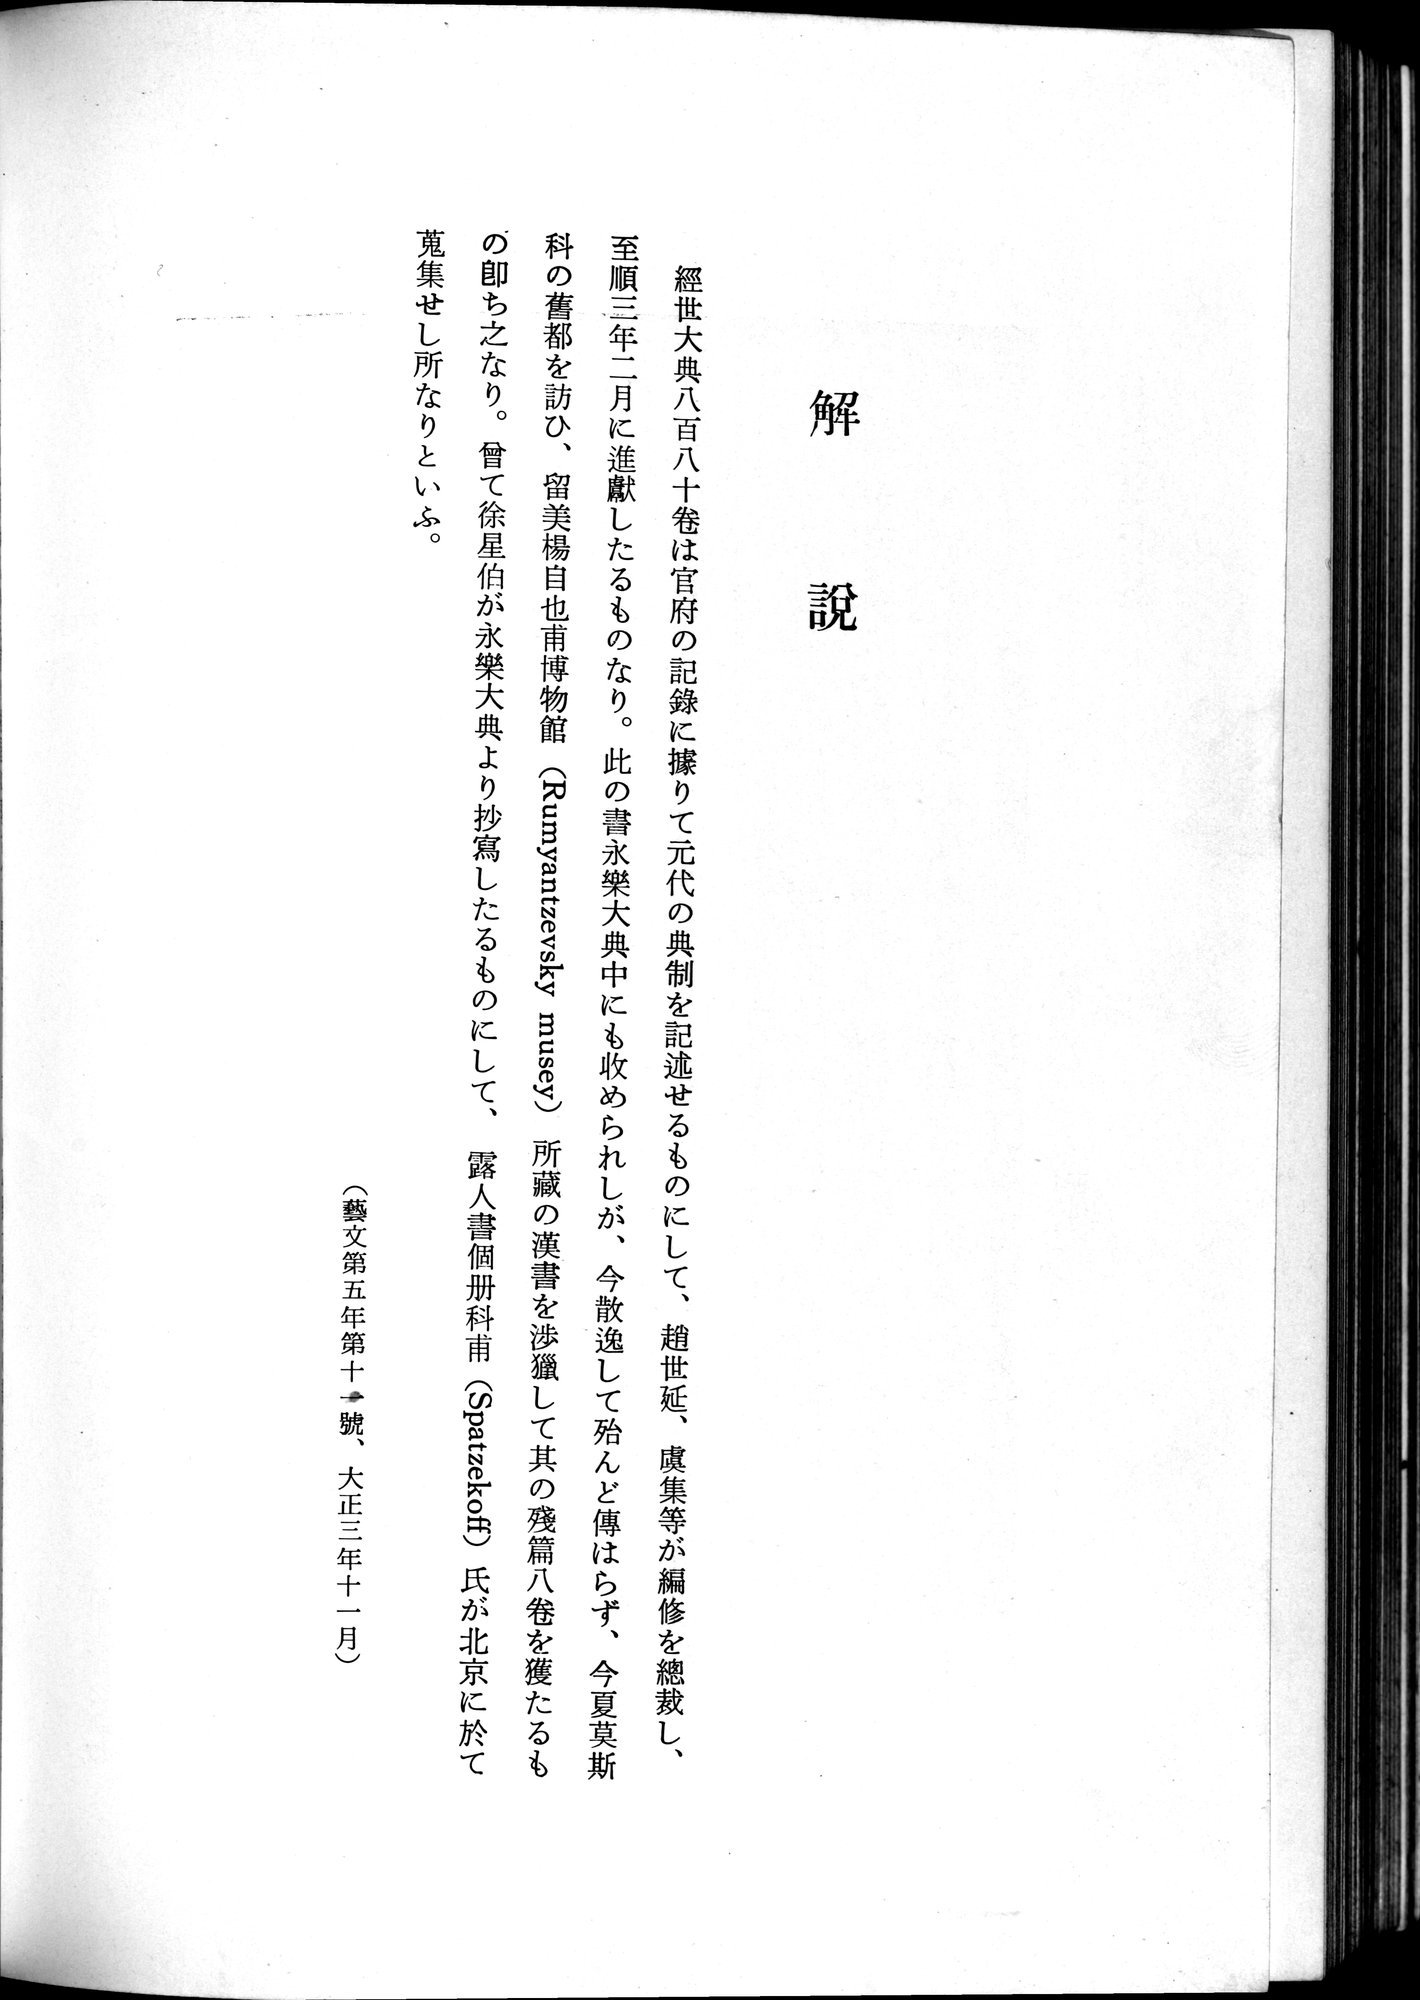 羽田博士史学論文集 : vol.2 / Page 644 (Grayscale High Resolution Image)